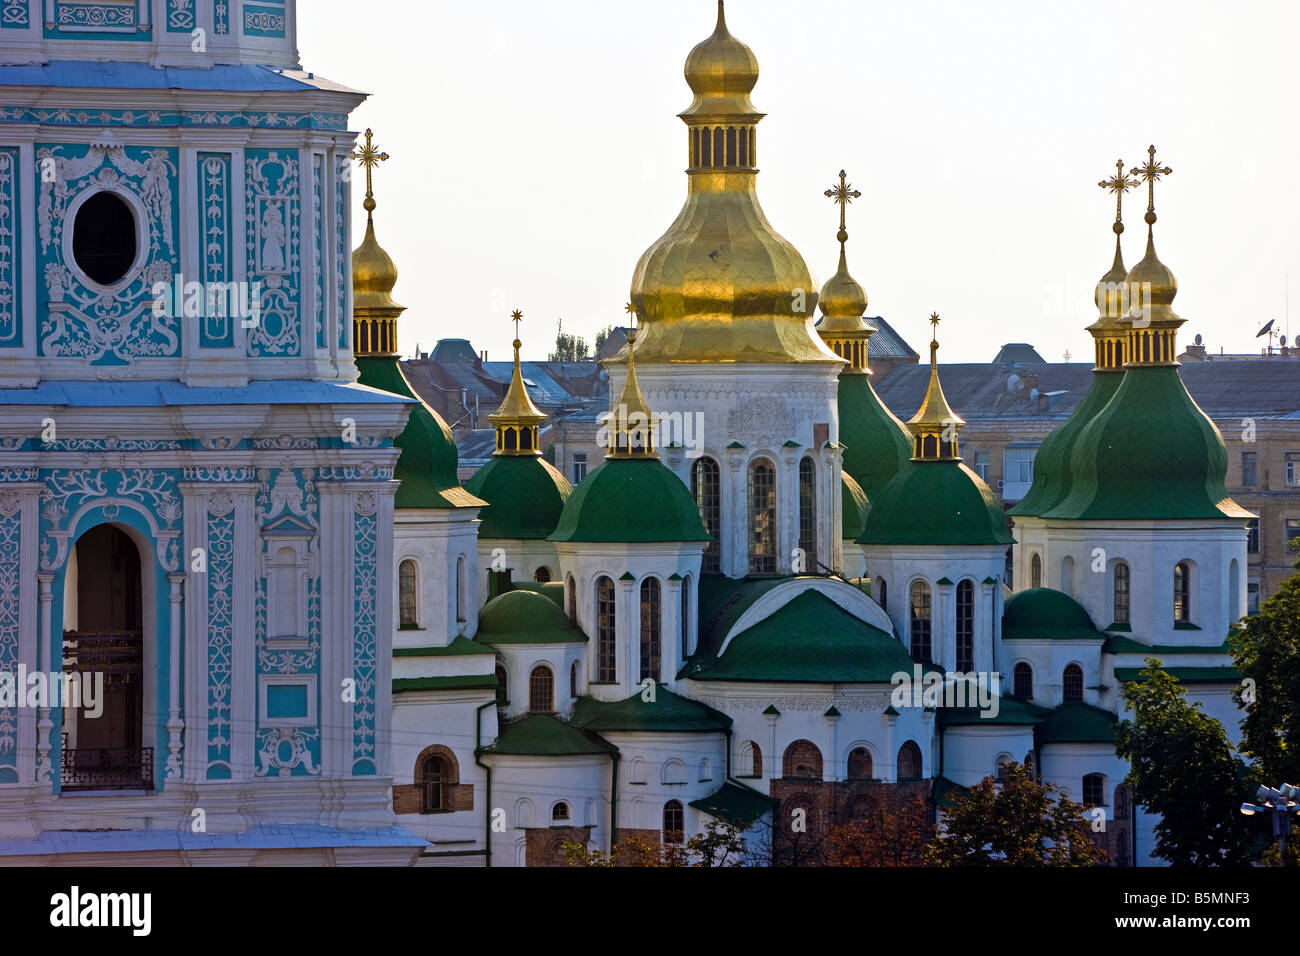 Toit vert et or les dômes de la cathédrale Sainte-Sophie, Kiev, Kiev, Ukraine, Europe de l'Est Banque D'Images